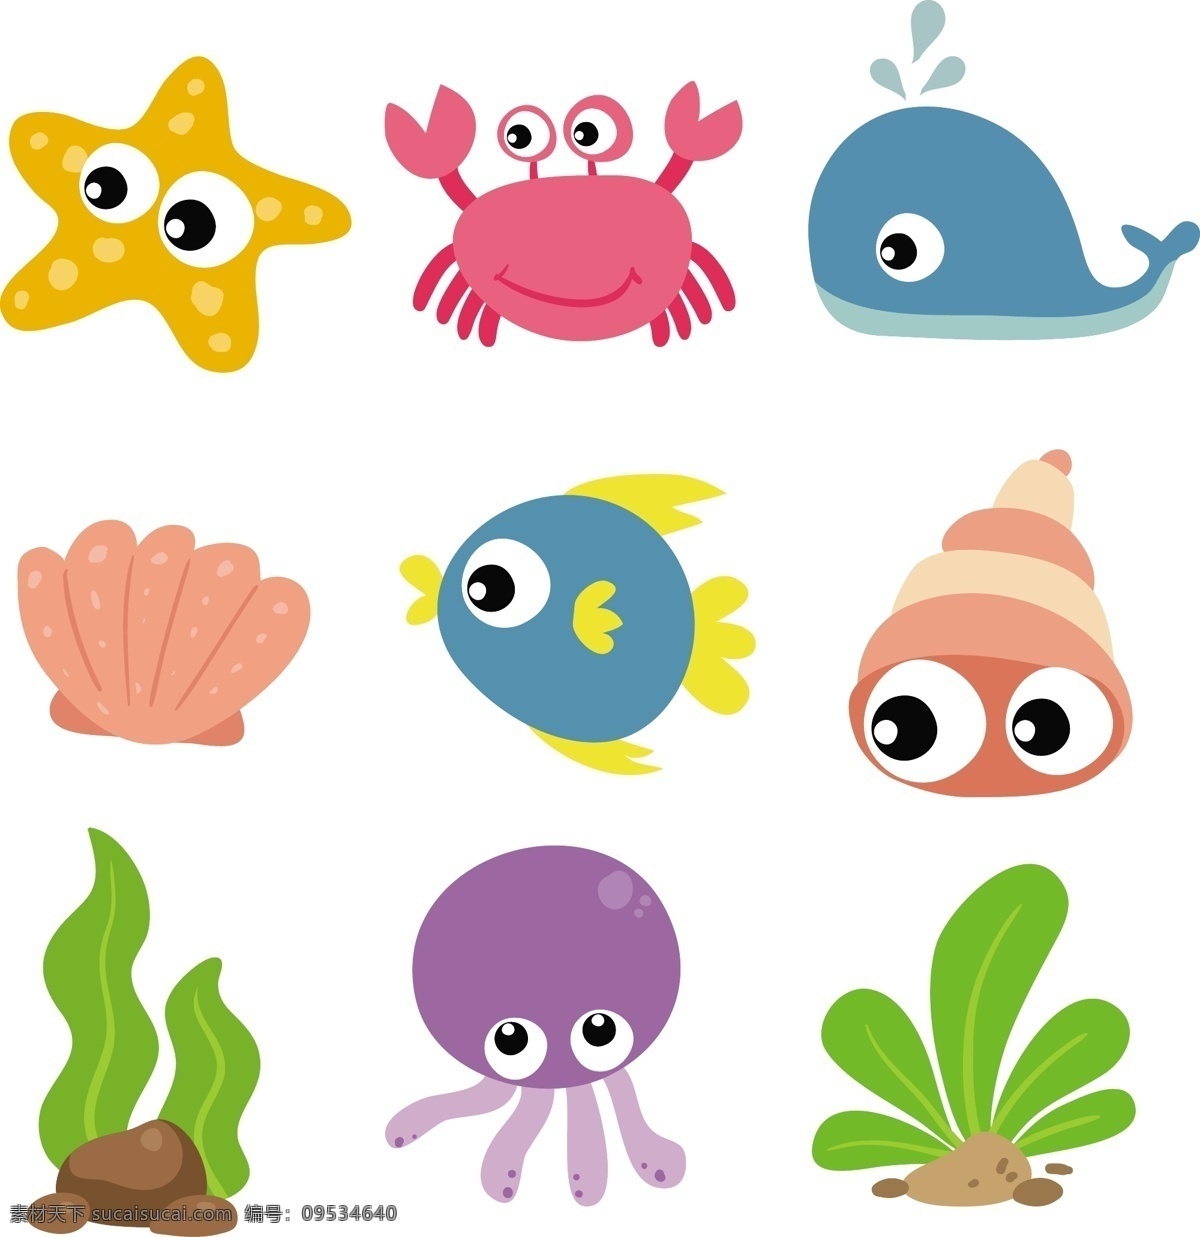 组 彩色 海洋 动物 鱼类 可爱 卡通 卡哇伊 矢量素材 小动物 创意设计 简约 创意 元素 生物元素 动物元素